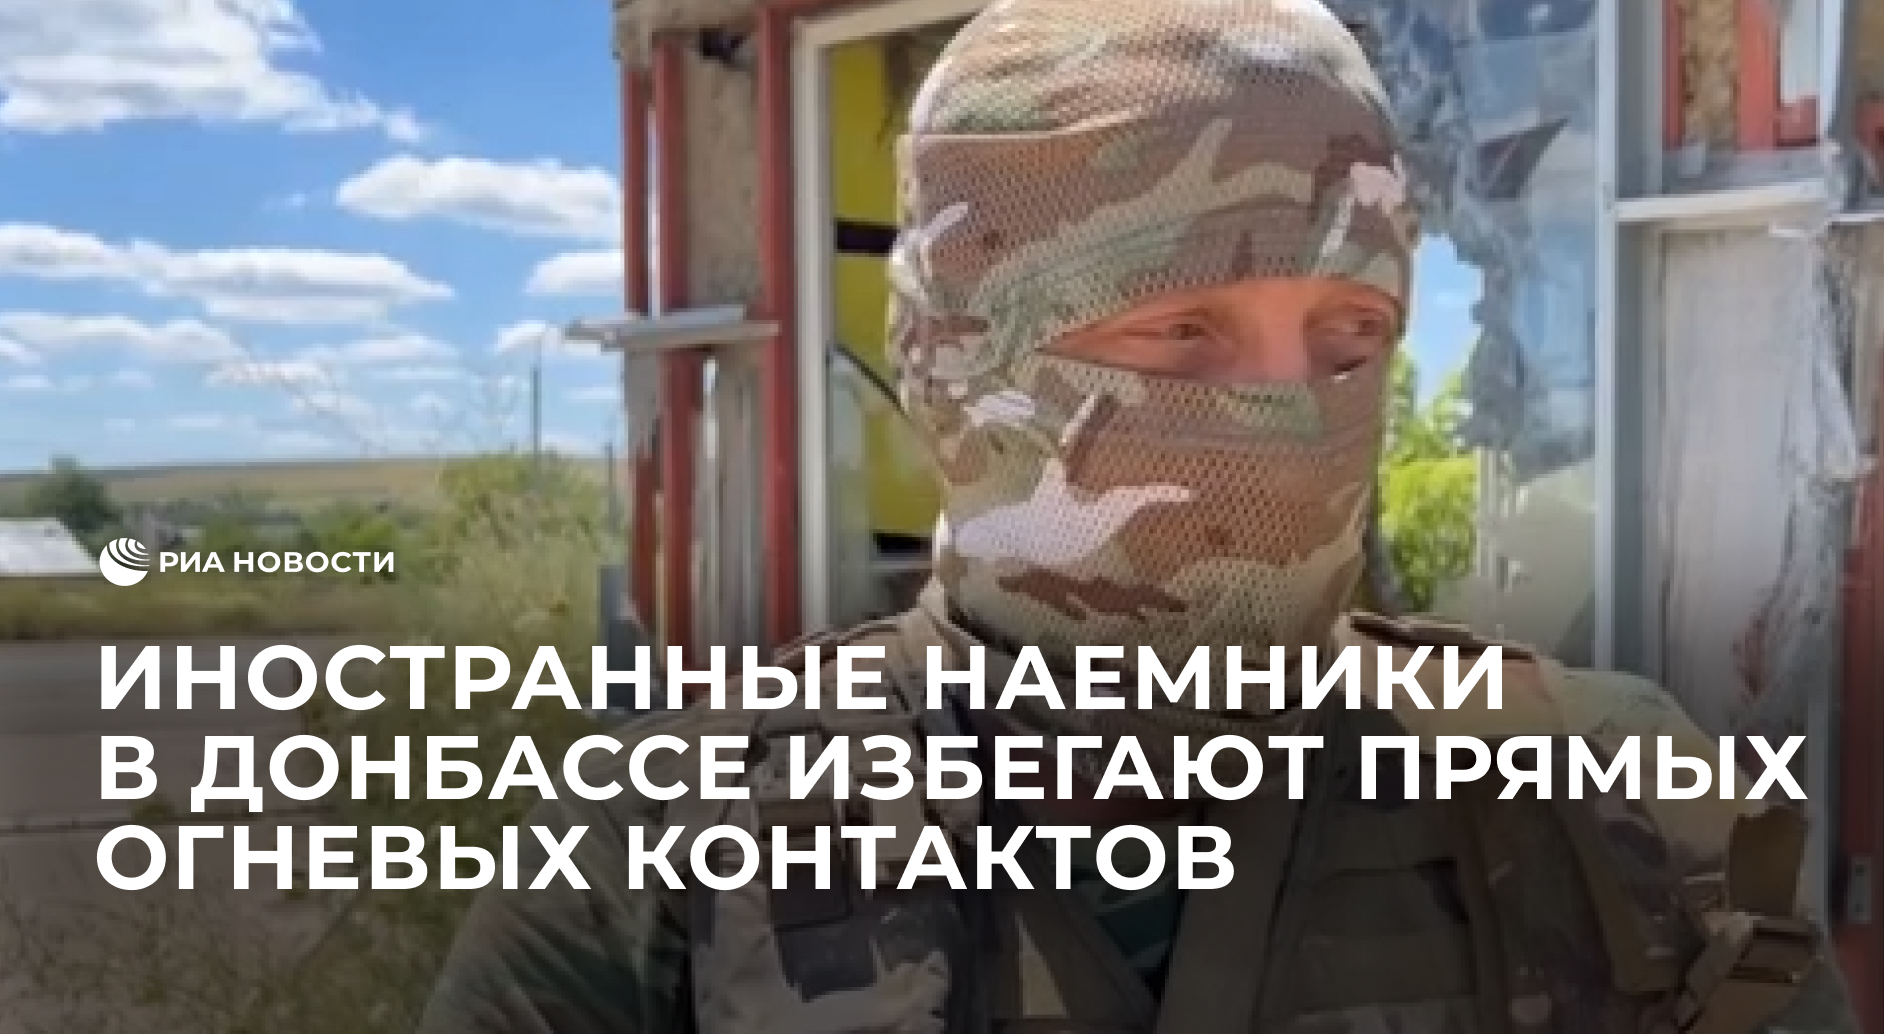 Иностранные наемники в Донбассе избегают прямых огневых контактов, рассказал офицер